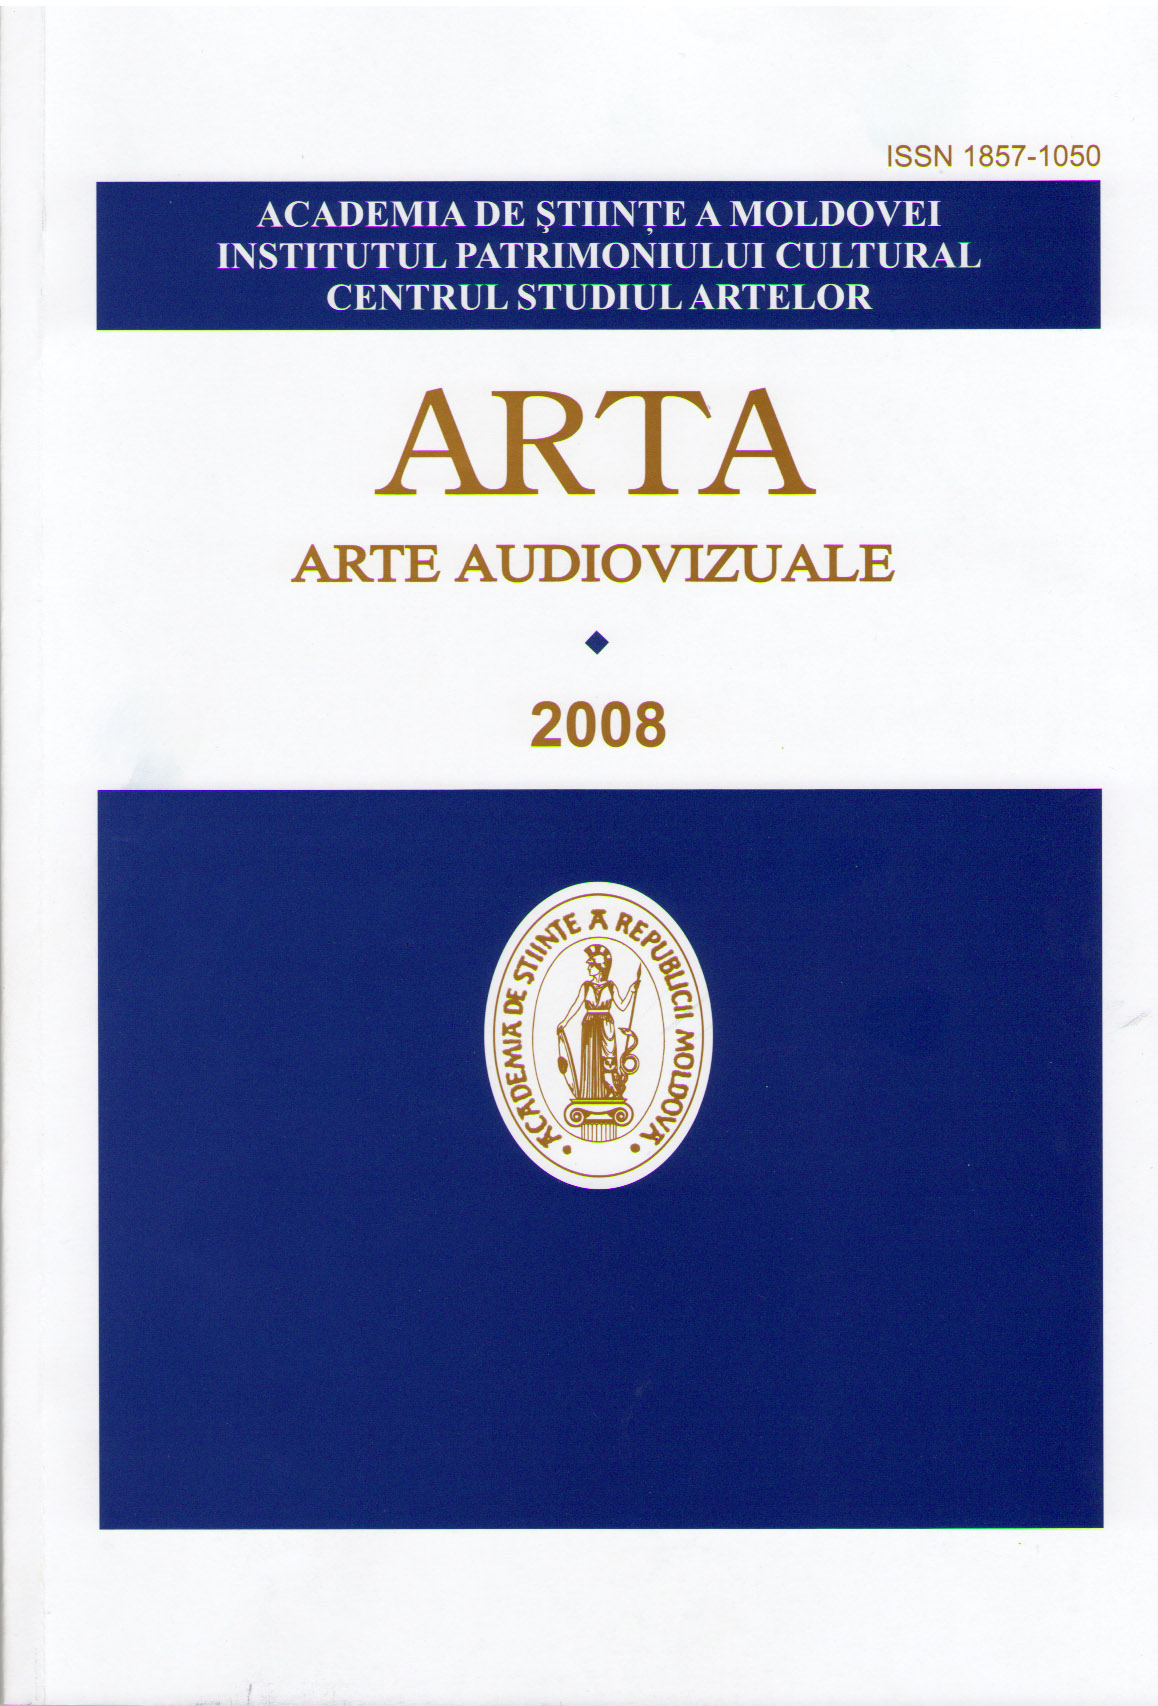 arta. asrte audiovizuale 2008